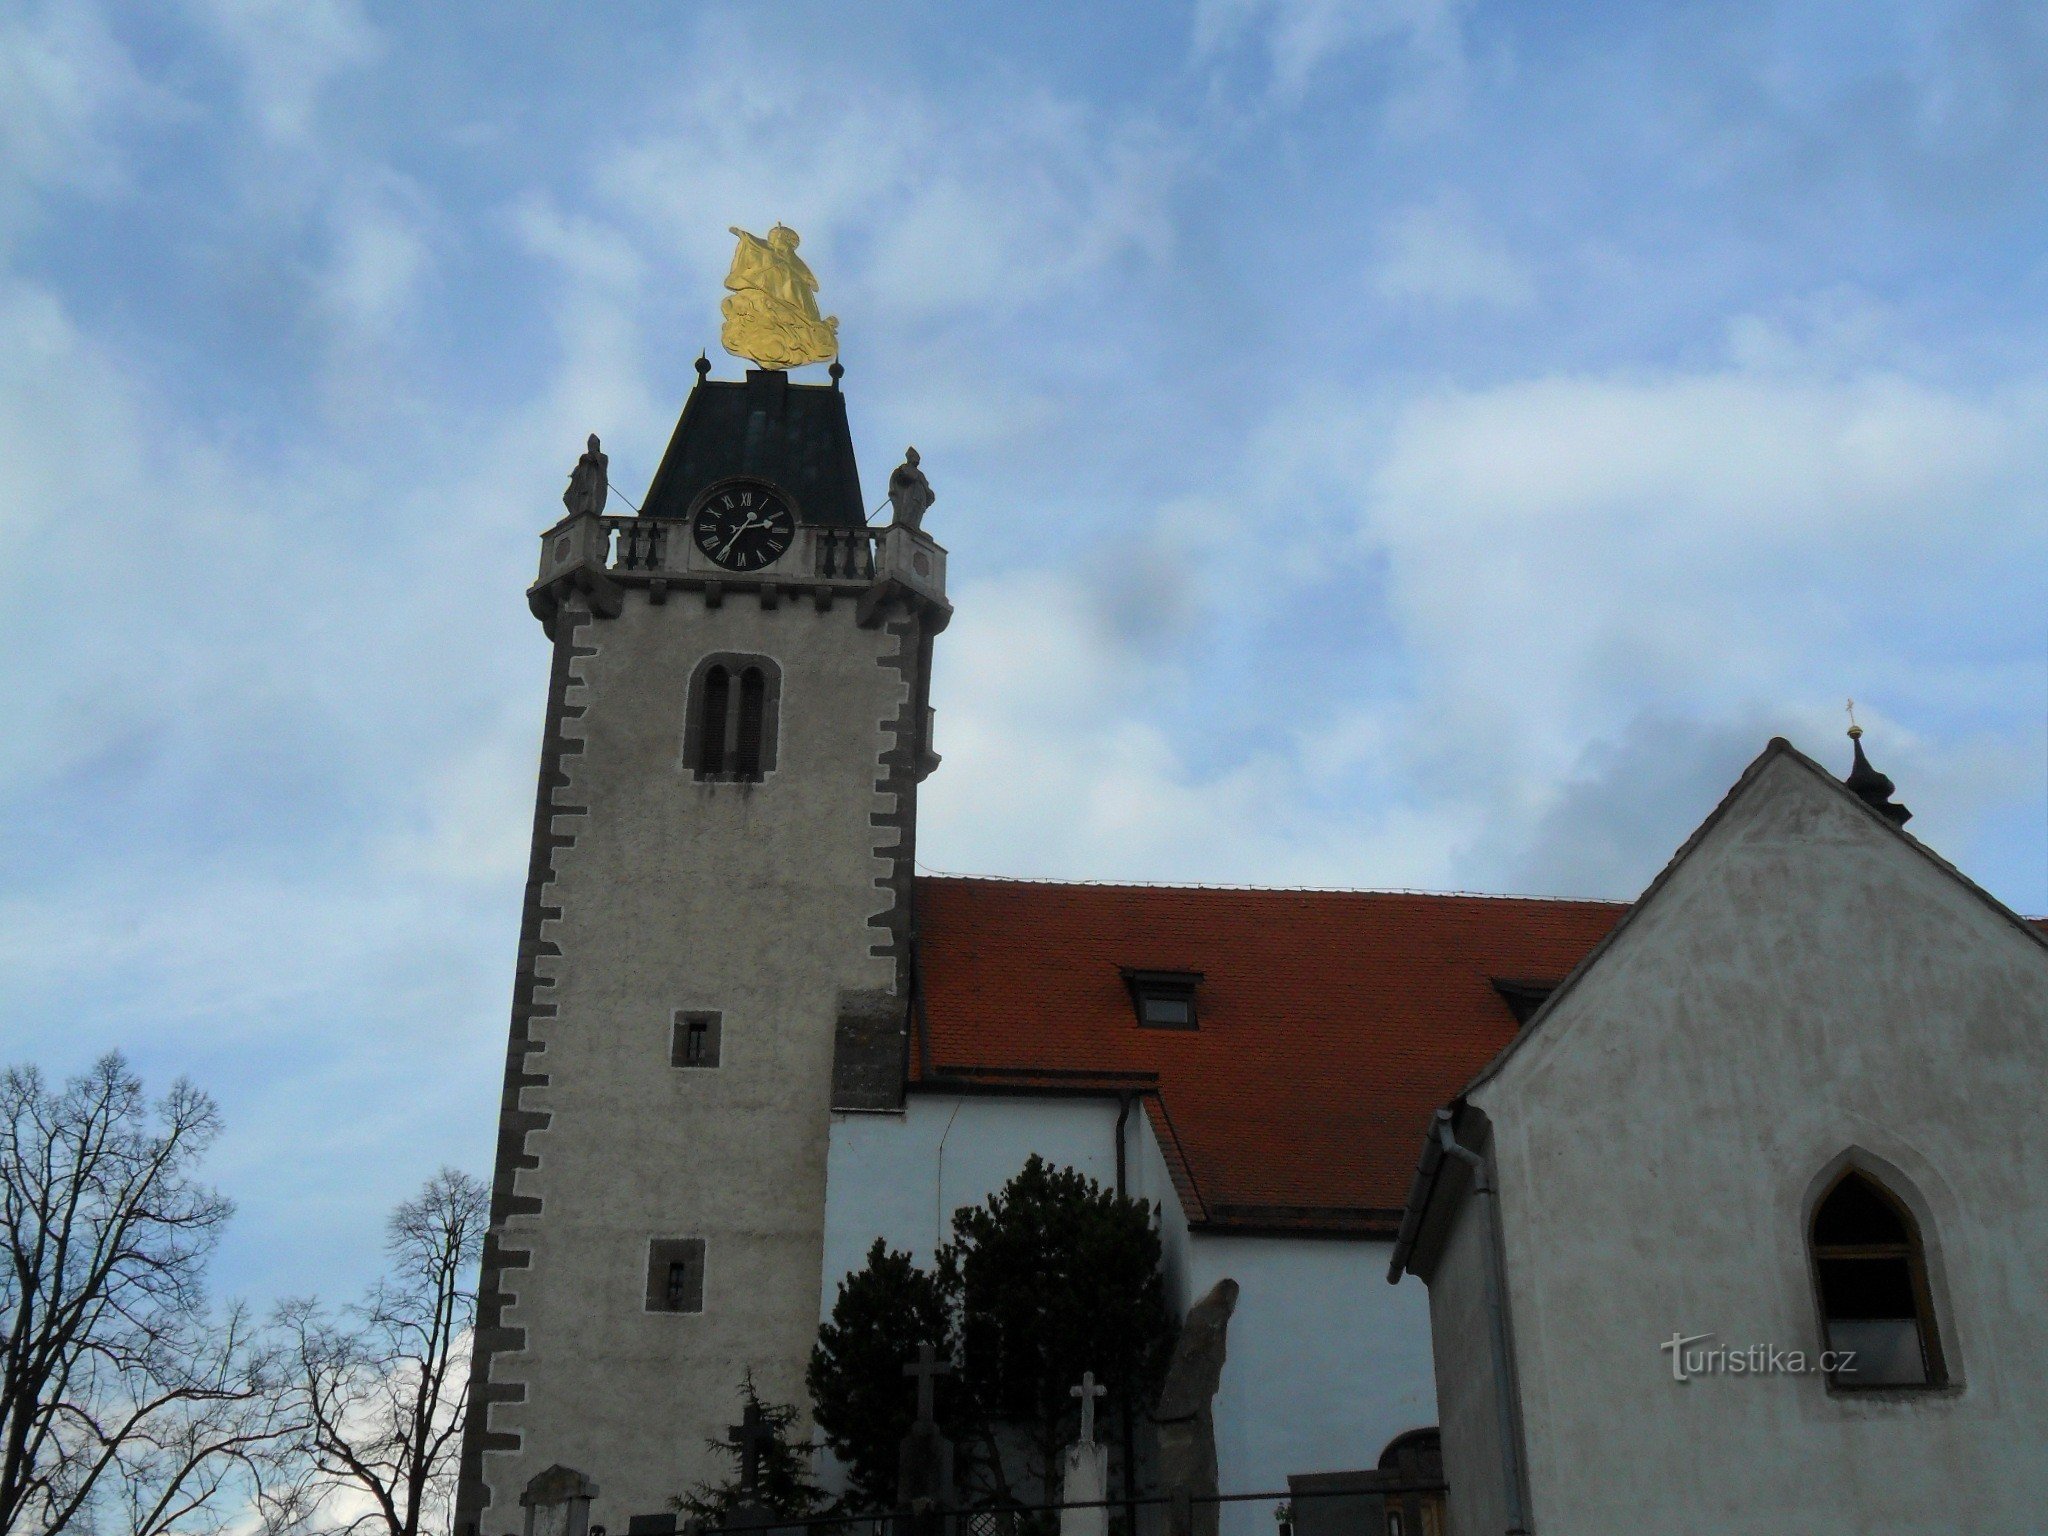 St. Gothard har en renoverad